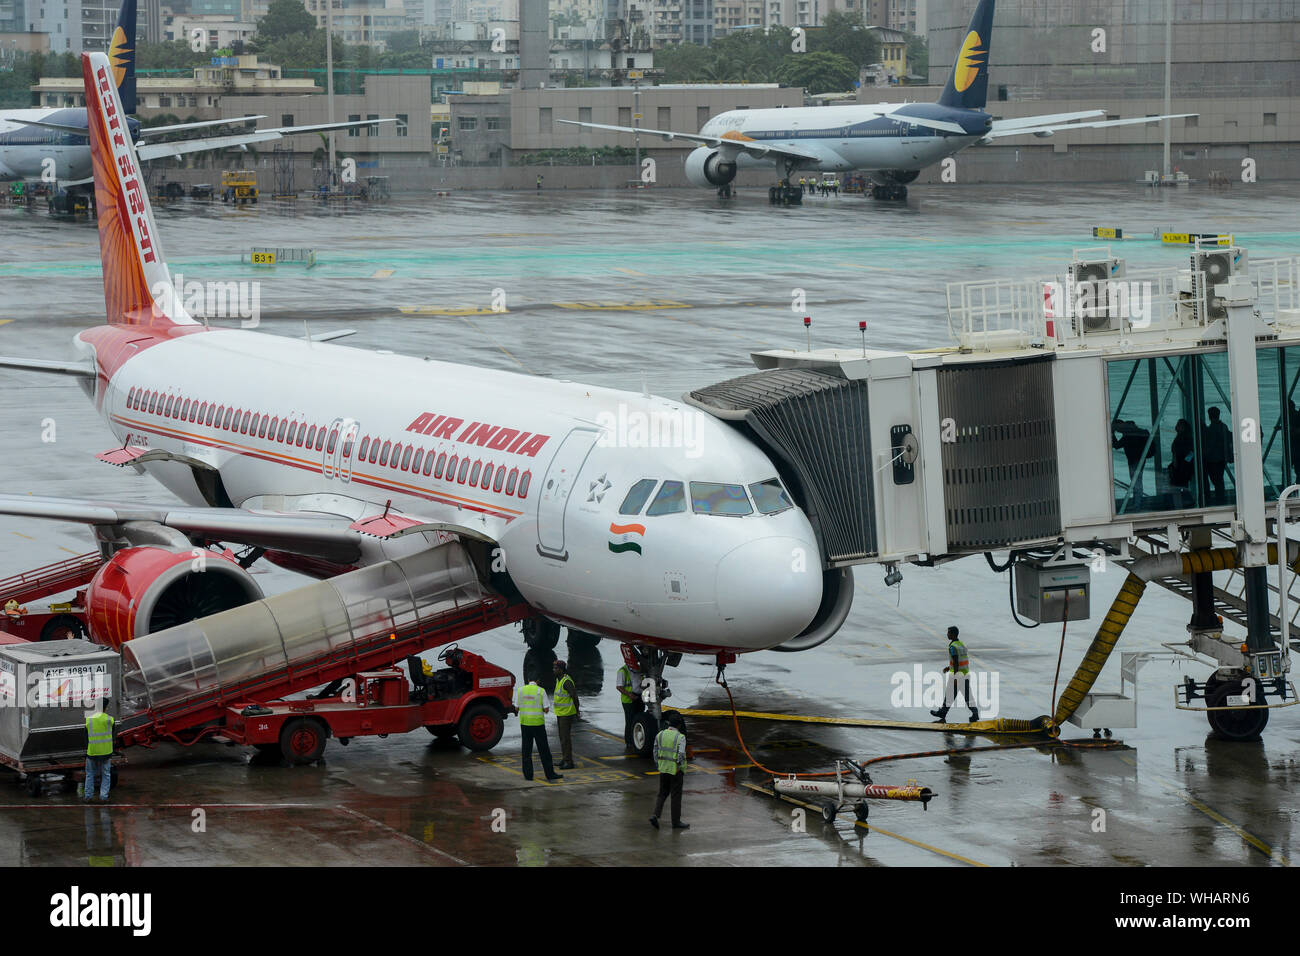 INDIA, Mumbai , Aeroporto Internazionale di Chatrapati Shivaji, Airbus di Air India, il personale di terra del team di servizio e di imbarco passeggero sul ponte di imbarco, dietro lo skyline di Mumbai e aerei di compagnie aeree private Jet Airways che sono andati in fallimento nel 2019 Foto Stock